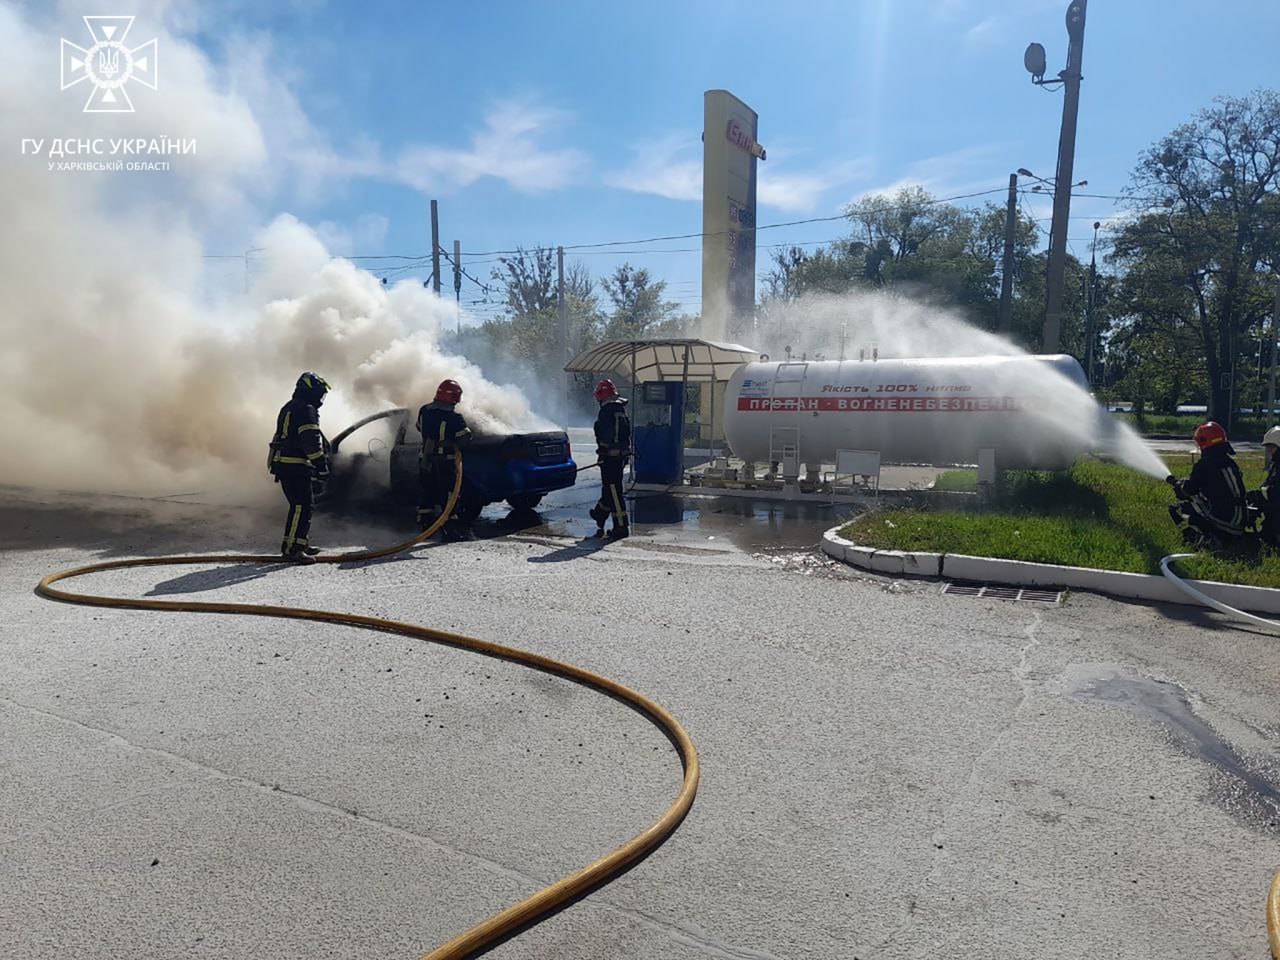  Пожар на АЗС в Харькове во время заправки газом 2